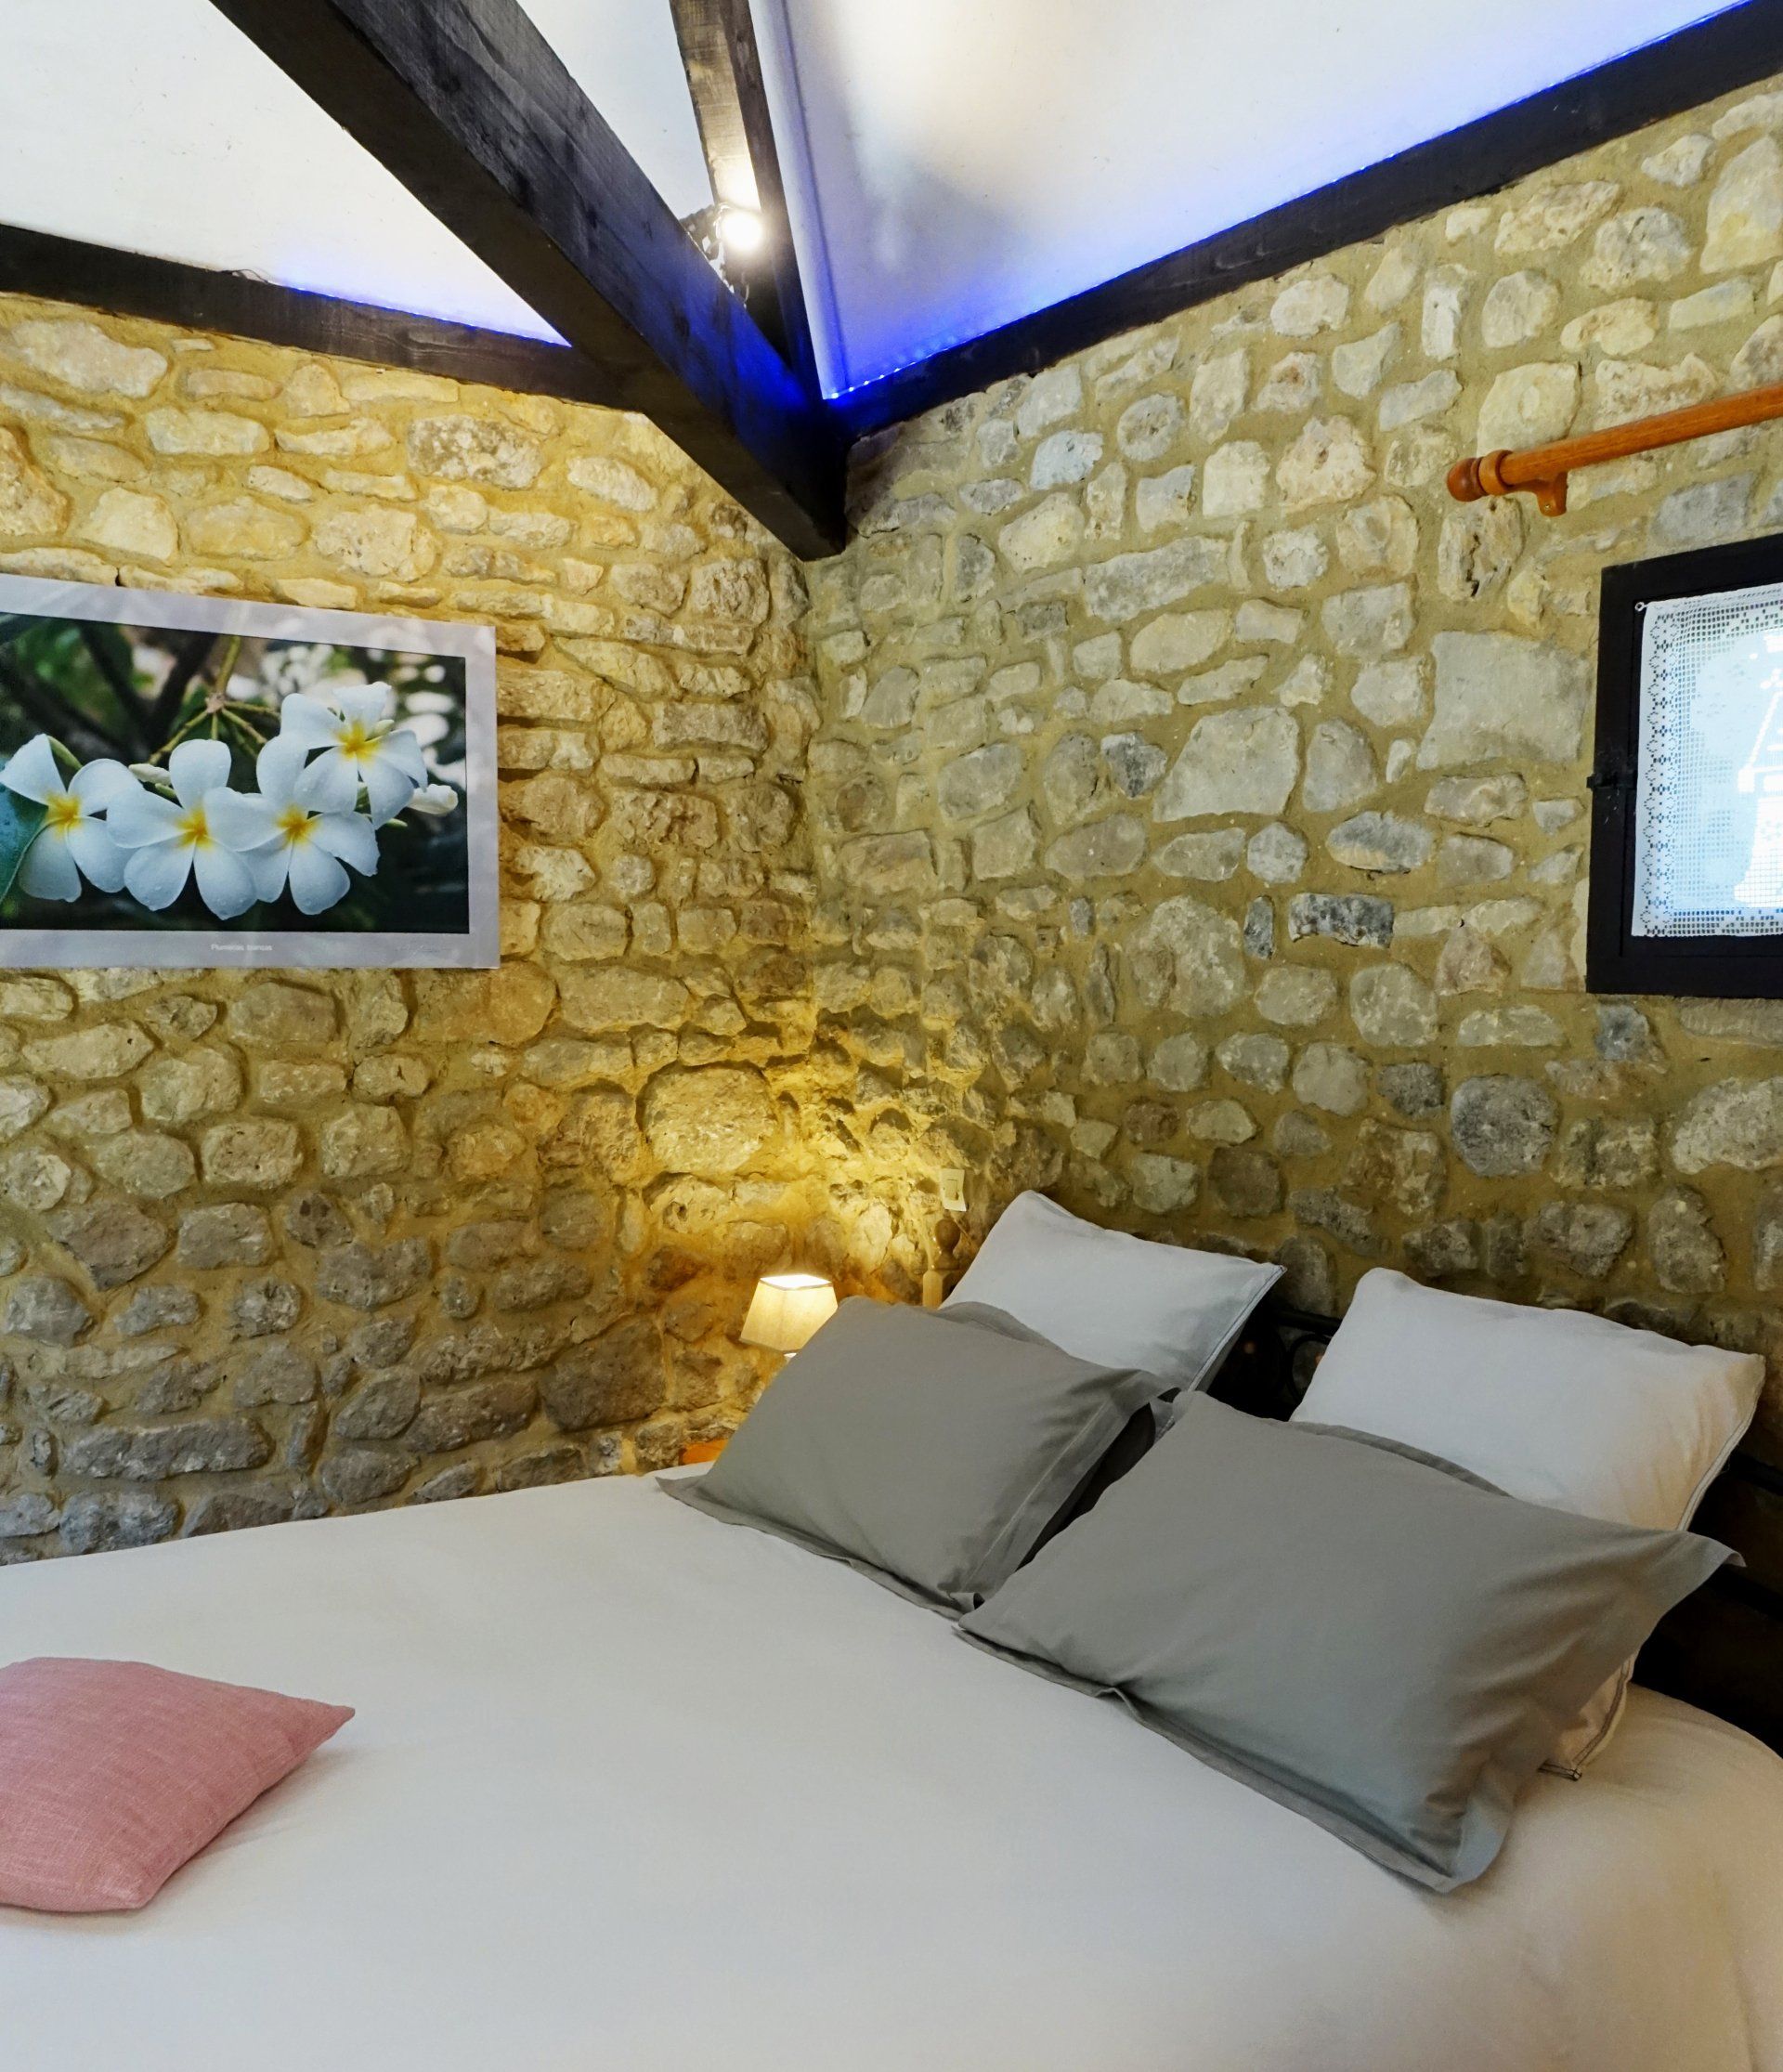 Vue intérieure chambre d'hôtes La Borie, le lit 160x200cm, photo de fleurs blanches et mur en pierres. Eclairage : lampe de chevet et bande led au plafond